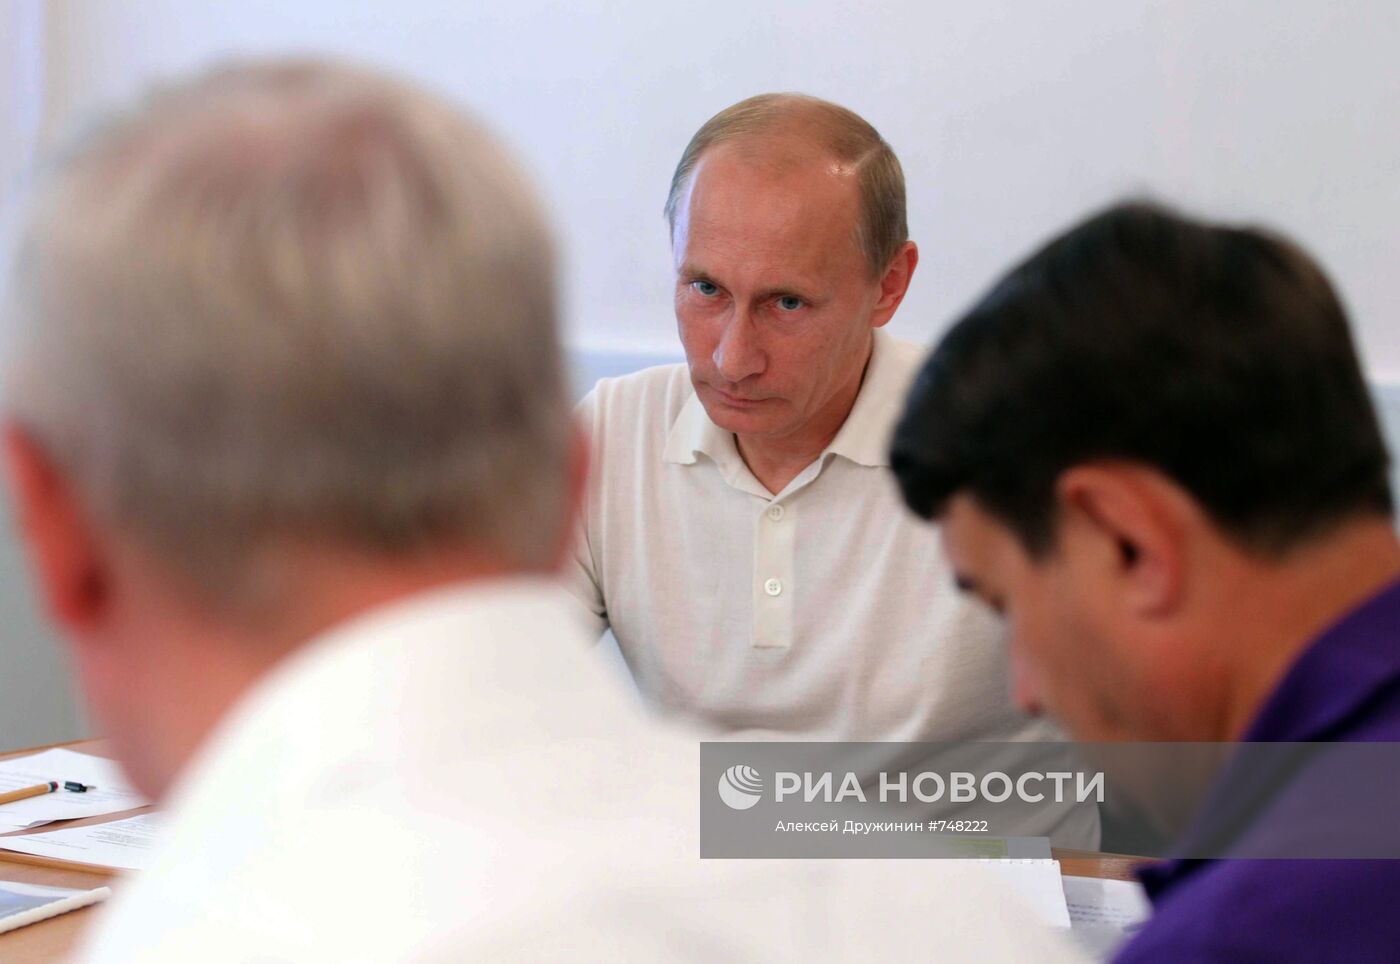 Владимир Путин посетил космодром "Восточный"